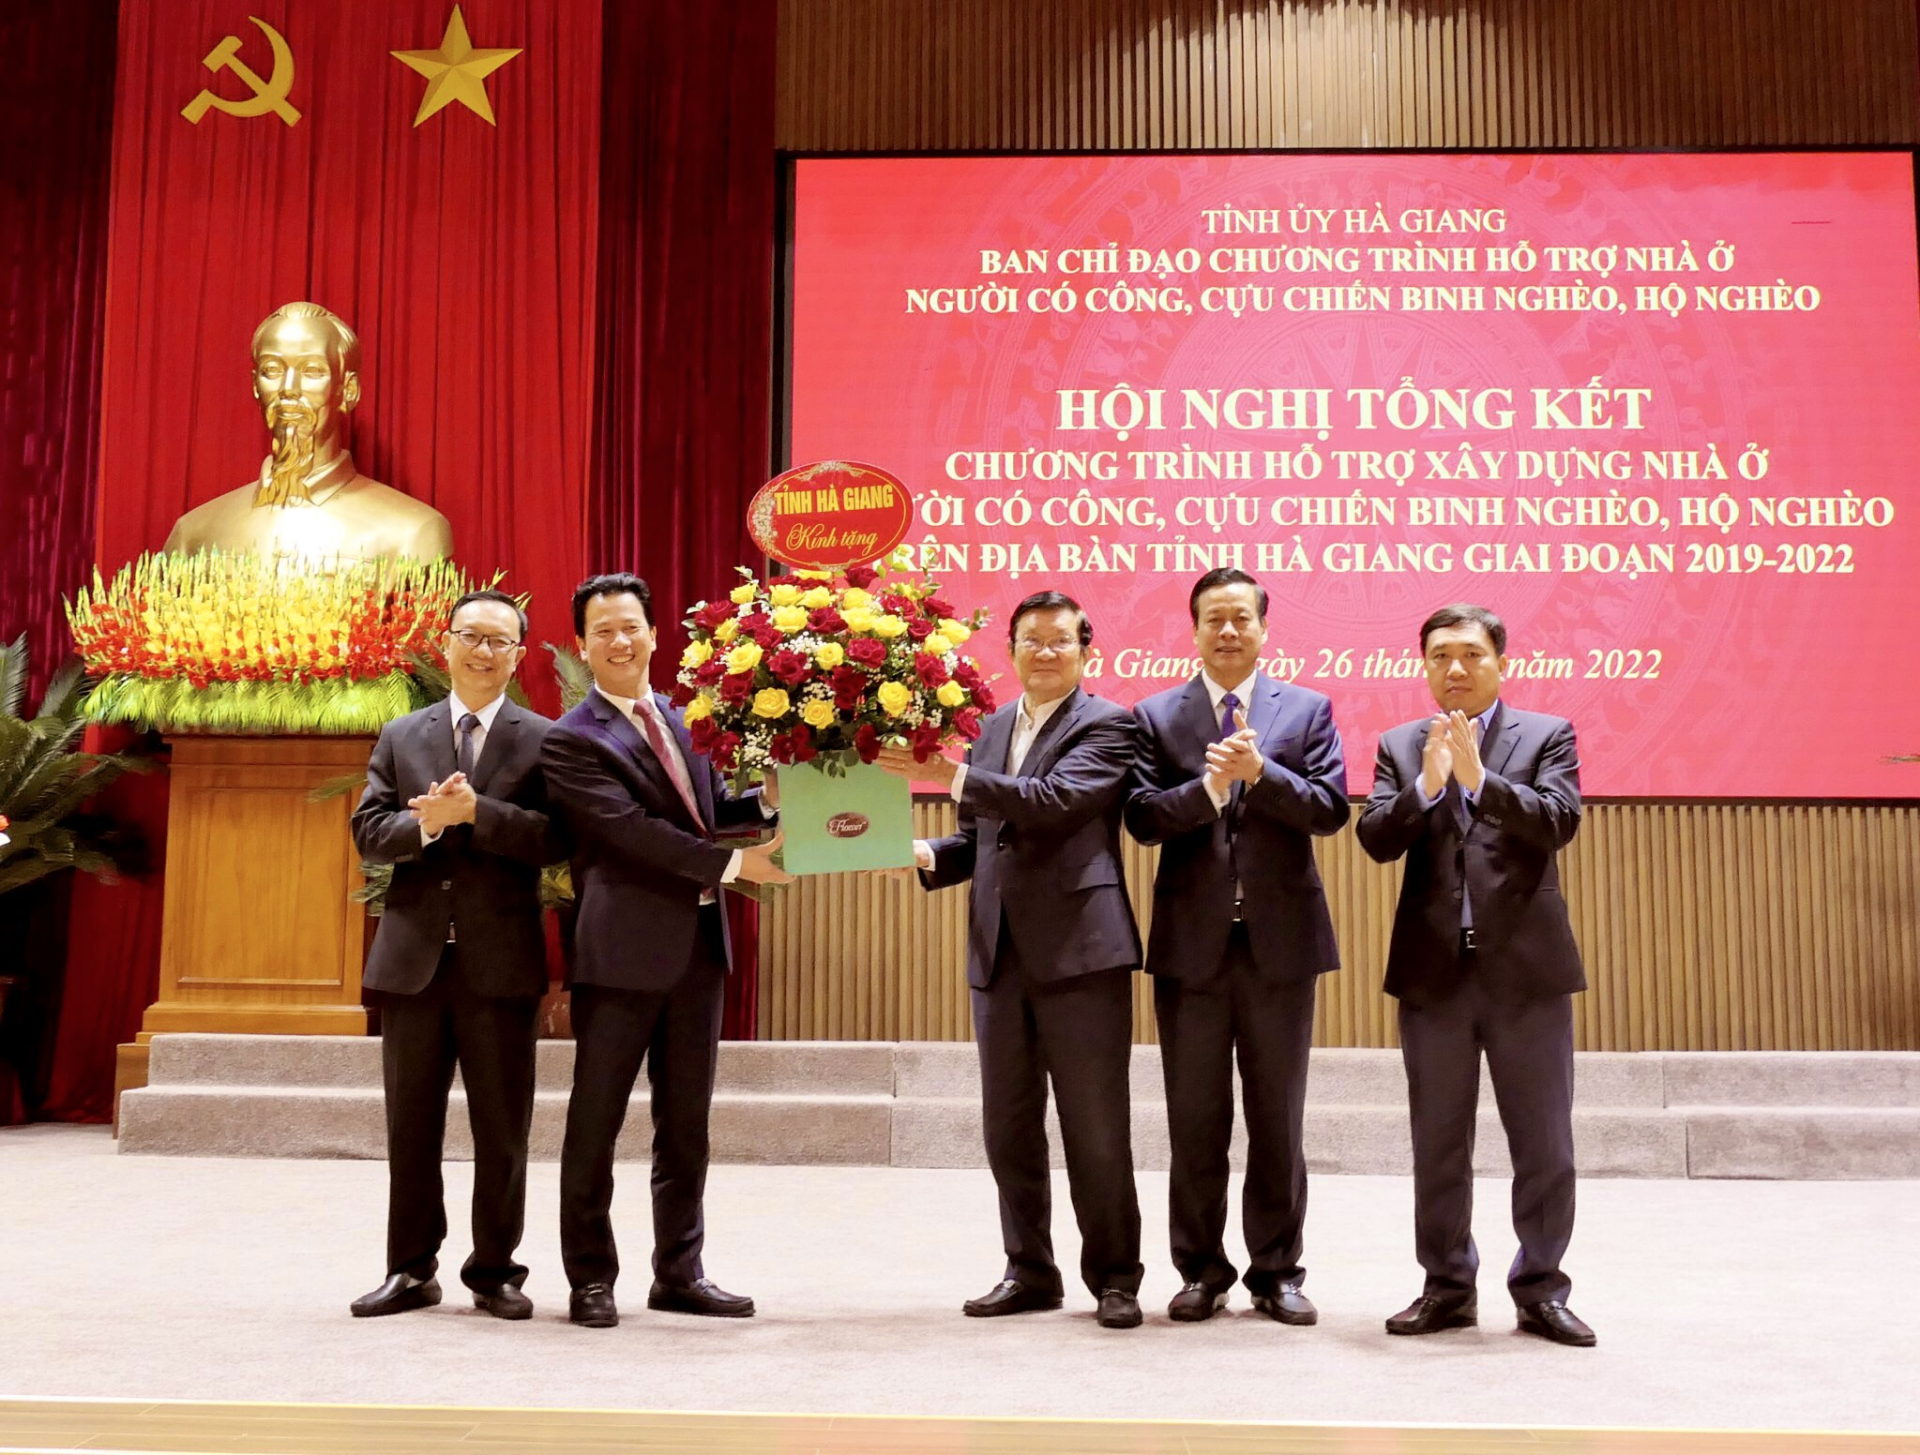 Các đồng chí Thường trực Tỉnh ủy tặng hoa cảm ơn sự quan tâm, ủng hộ của nguyên Chủ tịch nước Trương Tấn Sang với Chương trình Hỗ trợ xây dựng nhà ở của tỉnh